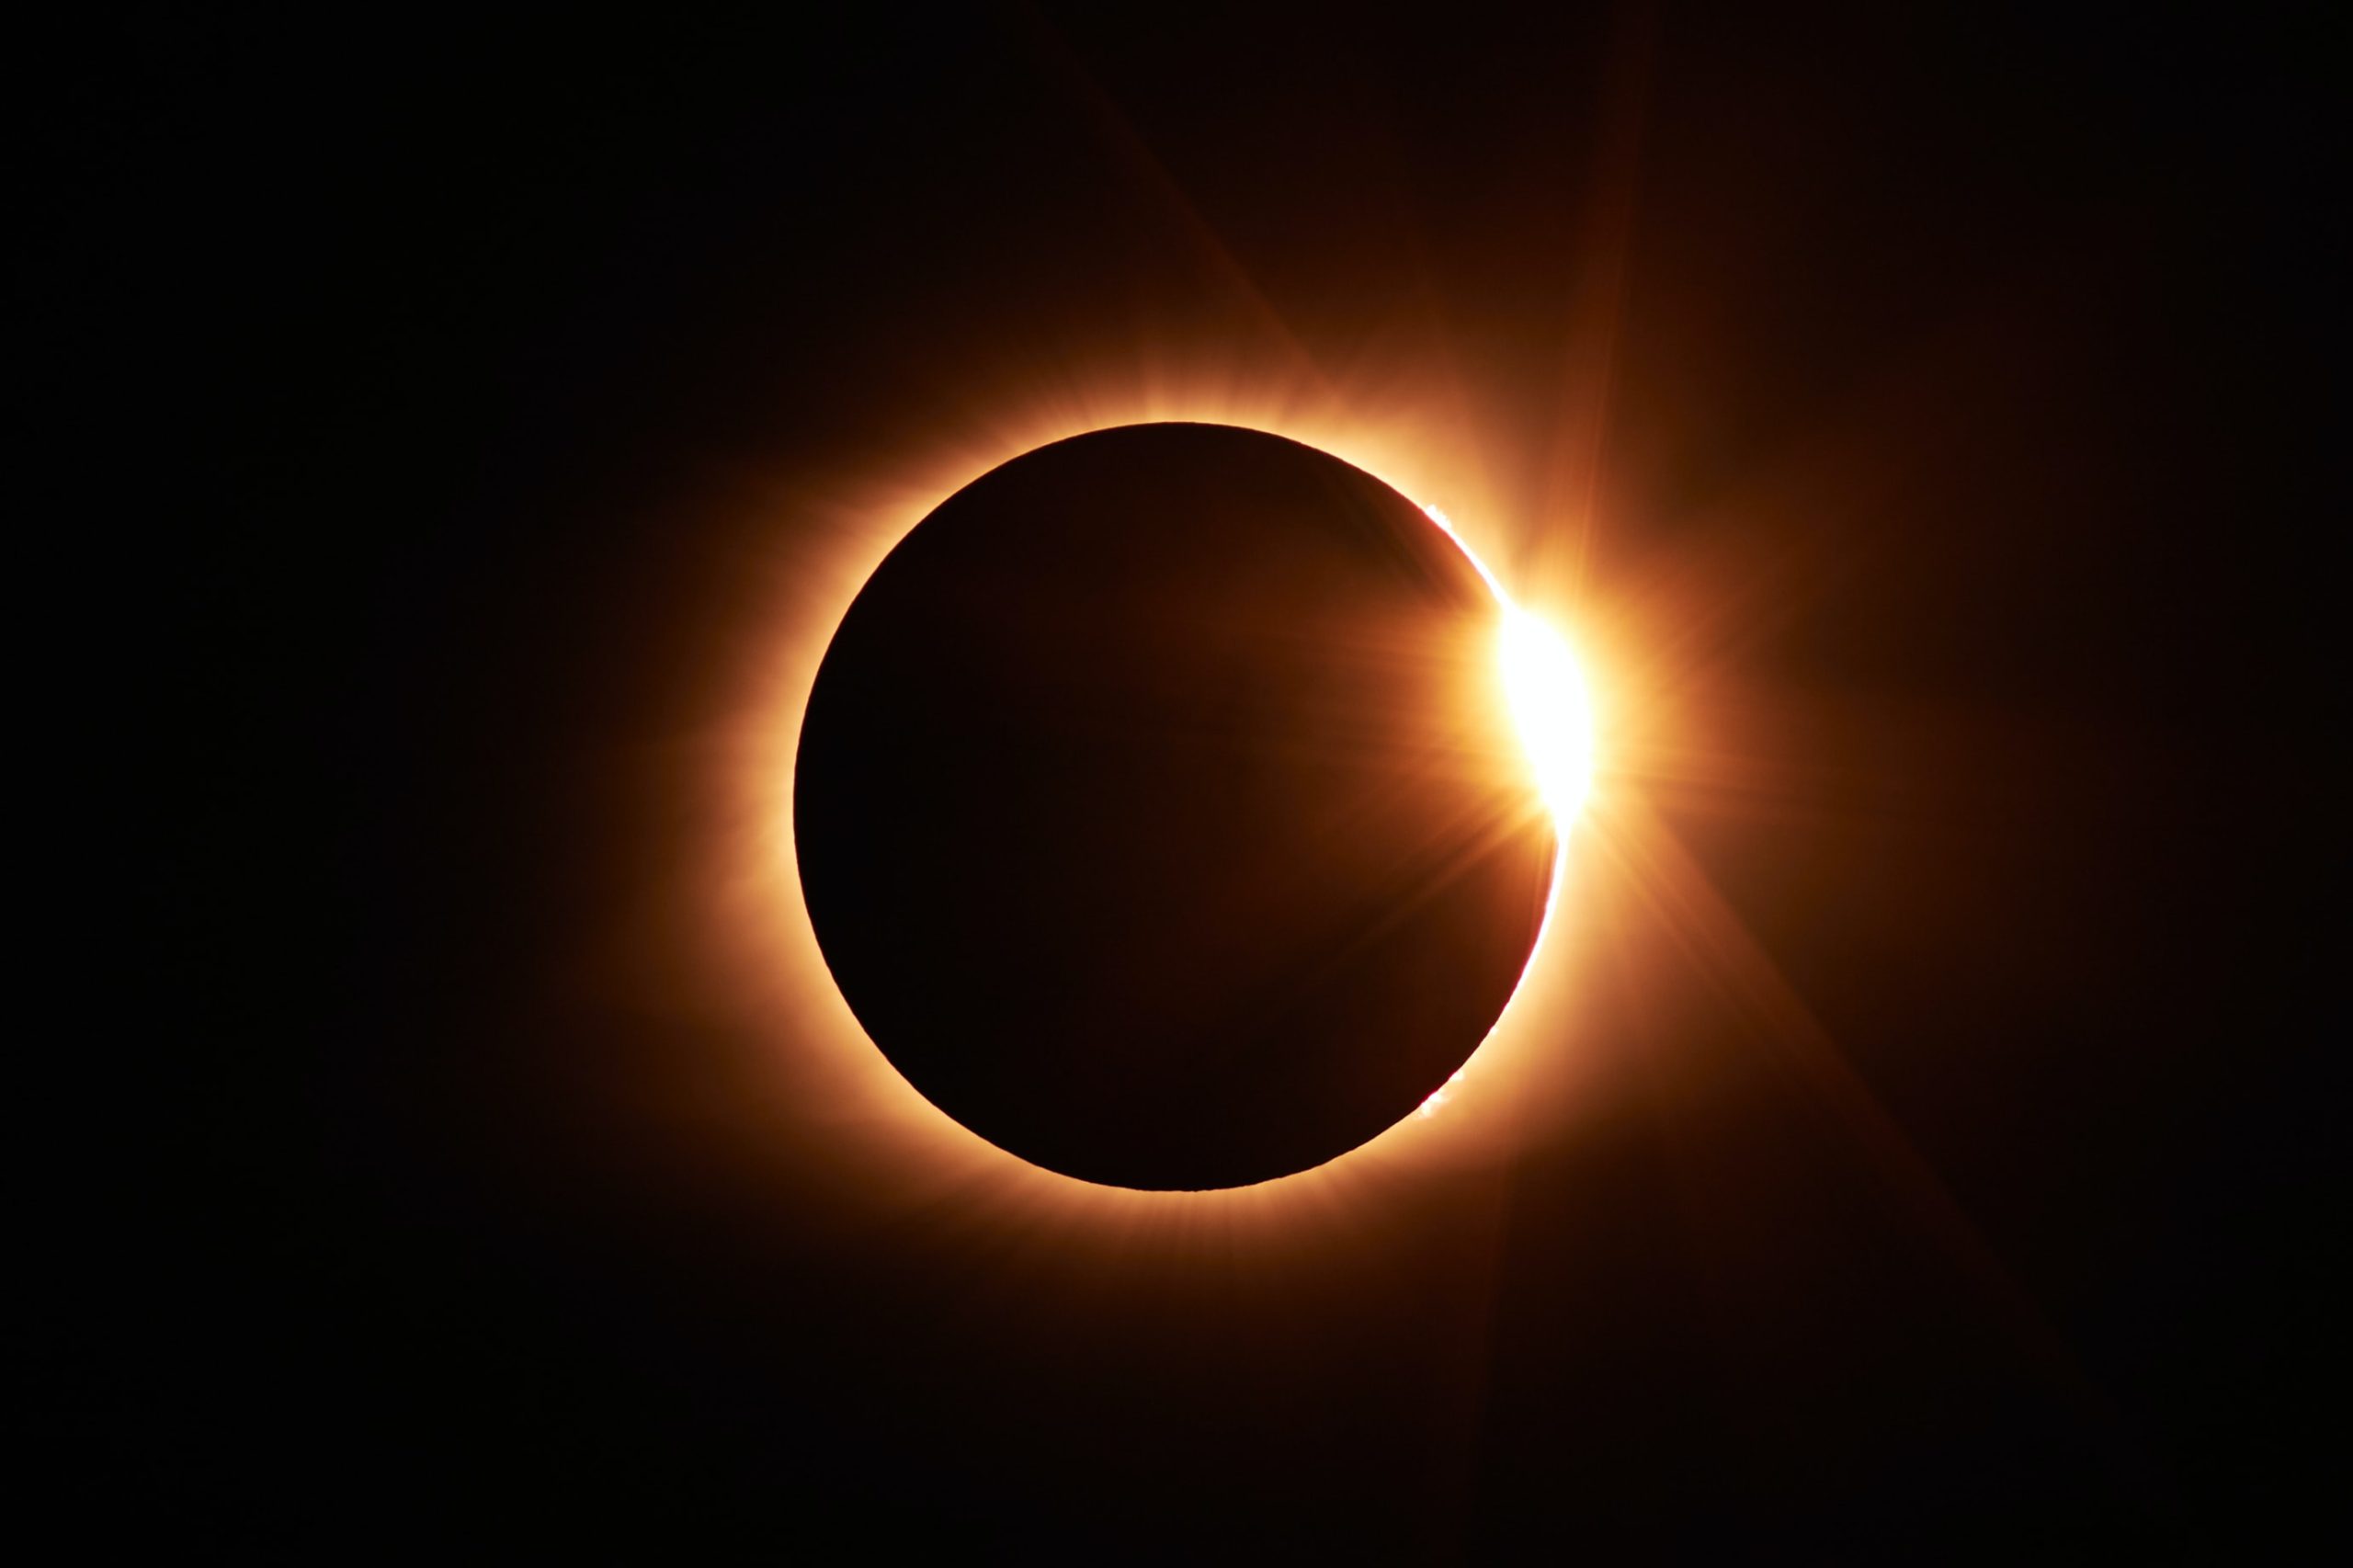  Maior eclipse parcial do século acontece na próxima sexta-feira (19)